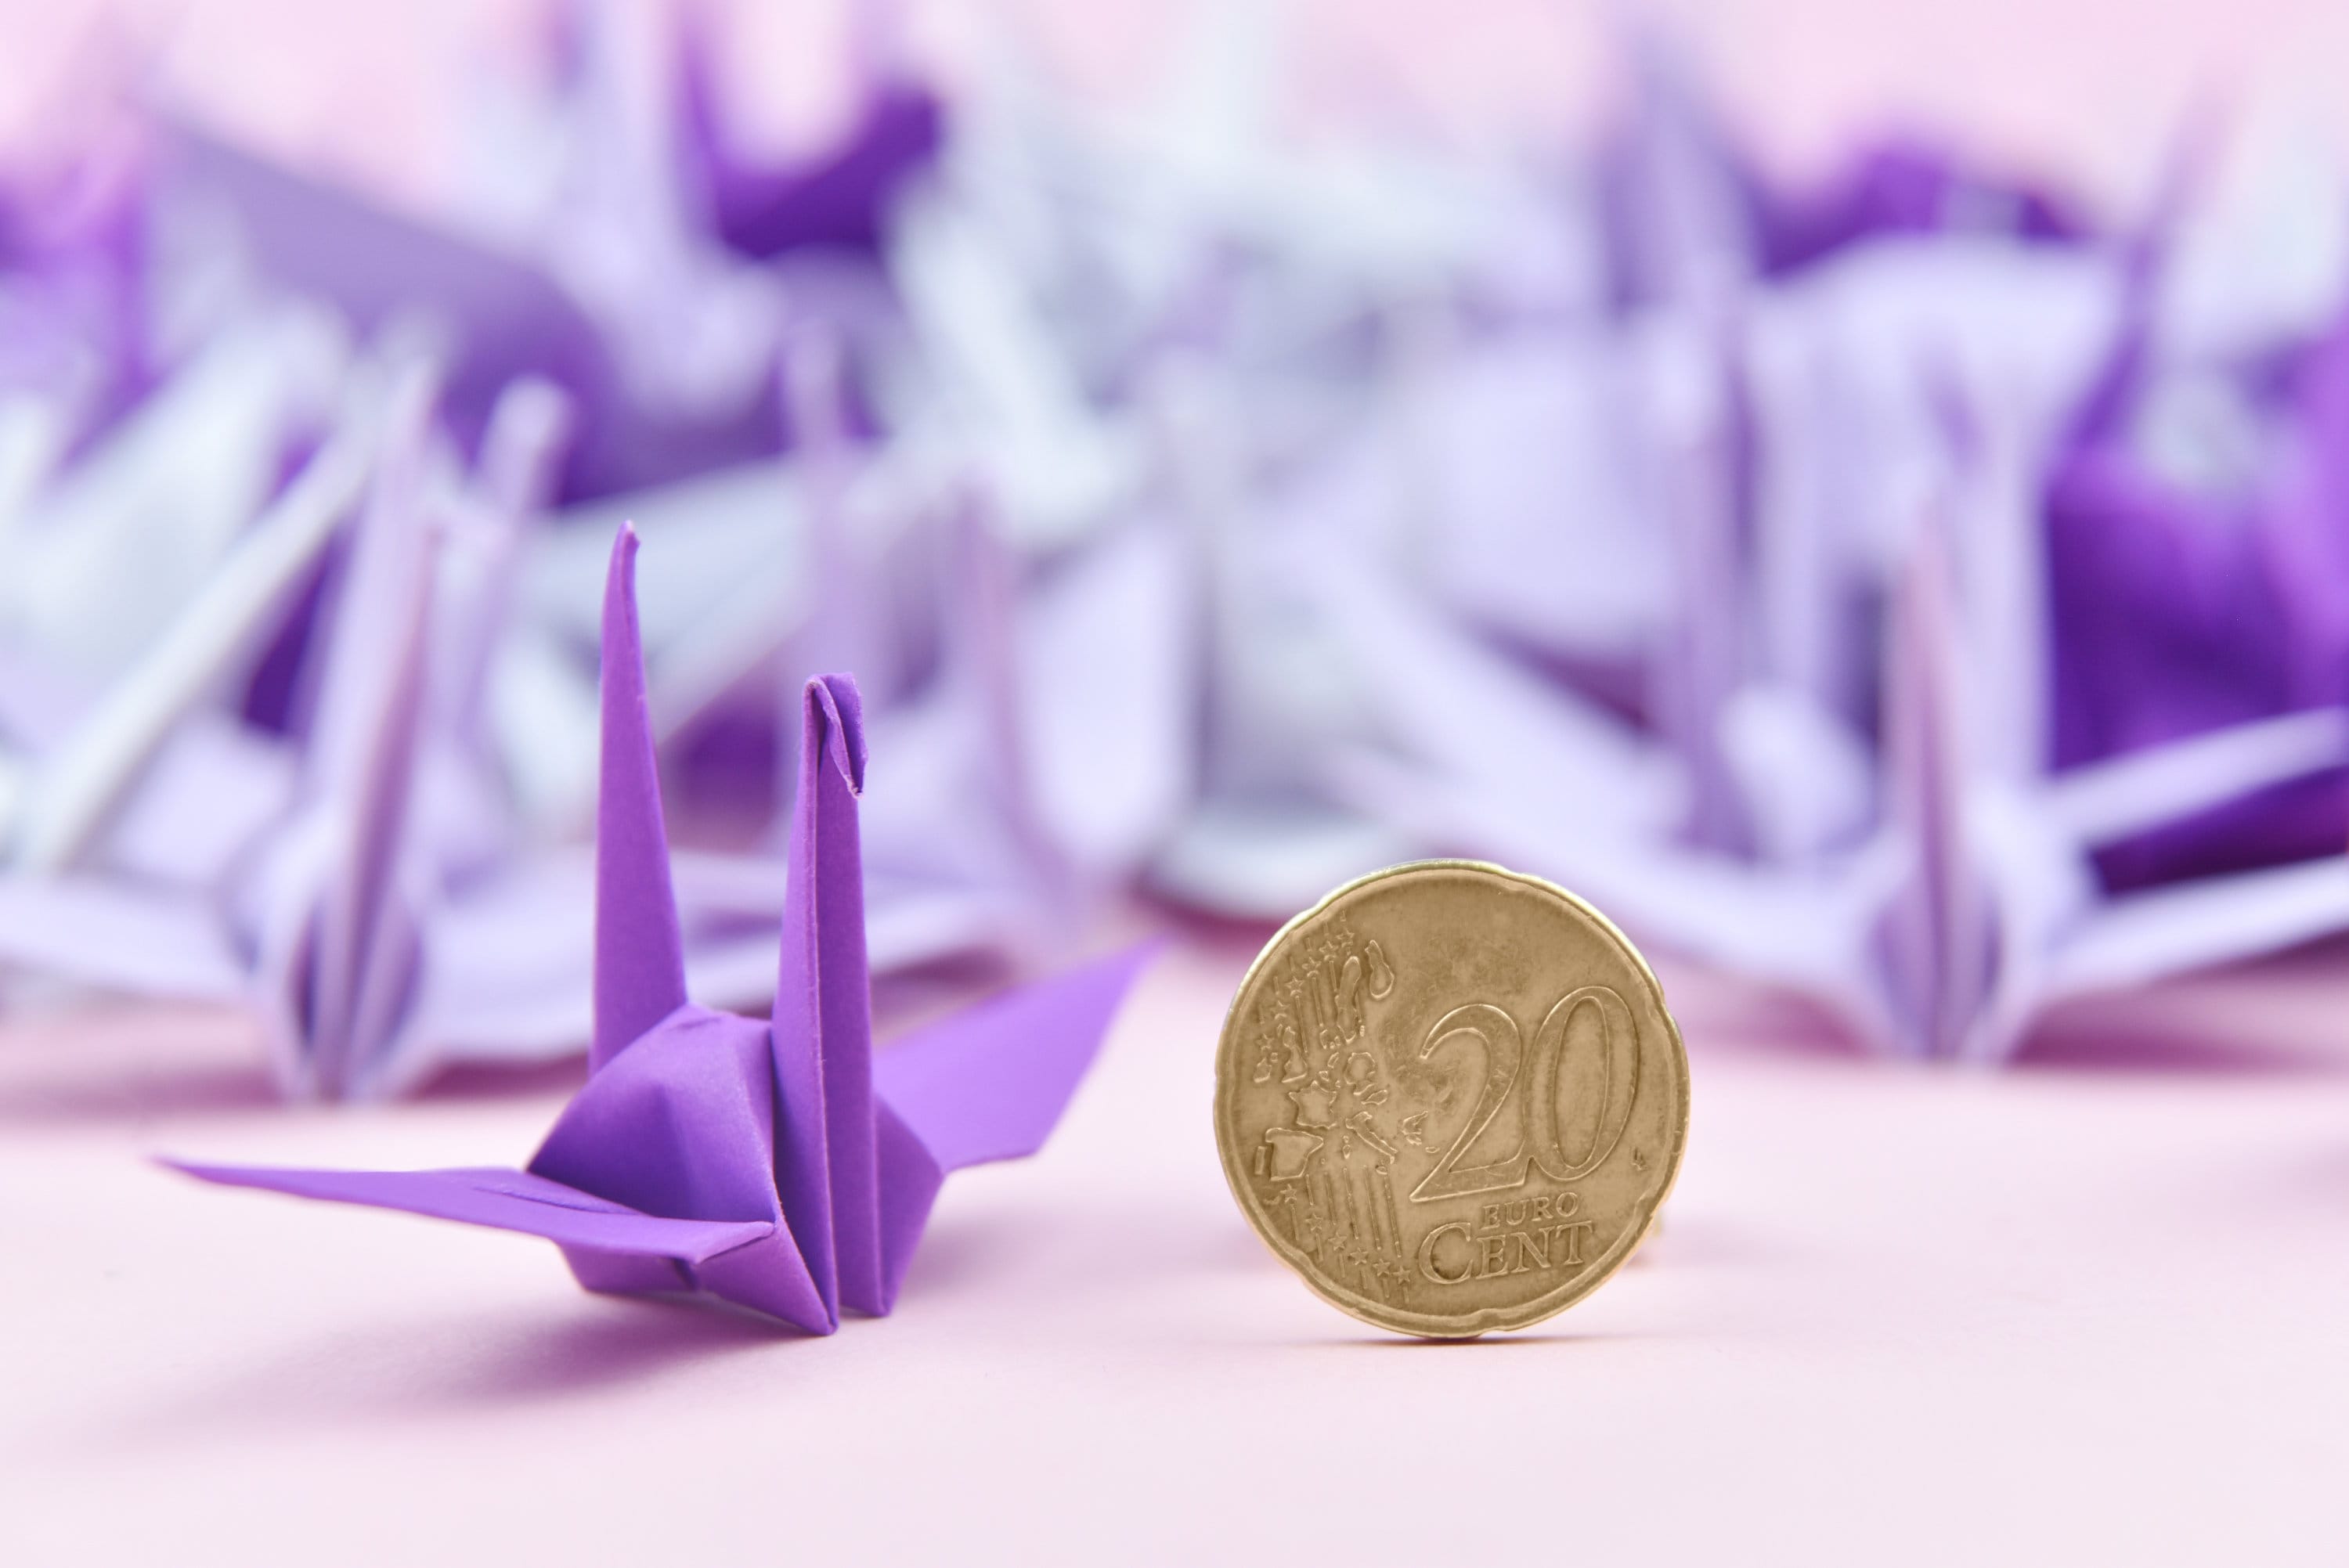 1000 Grúas de papel de origami - Tono de sombra púrpura - 3x3 pulgadas - para decoración de bodas, regalo de aniversario, San Valentín, telón de fondo